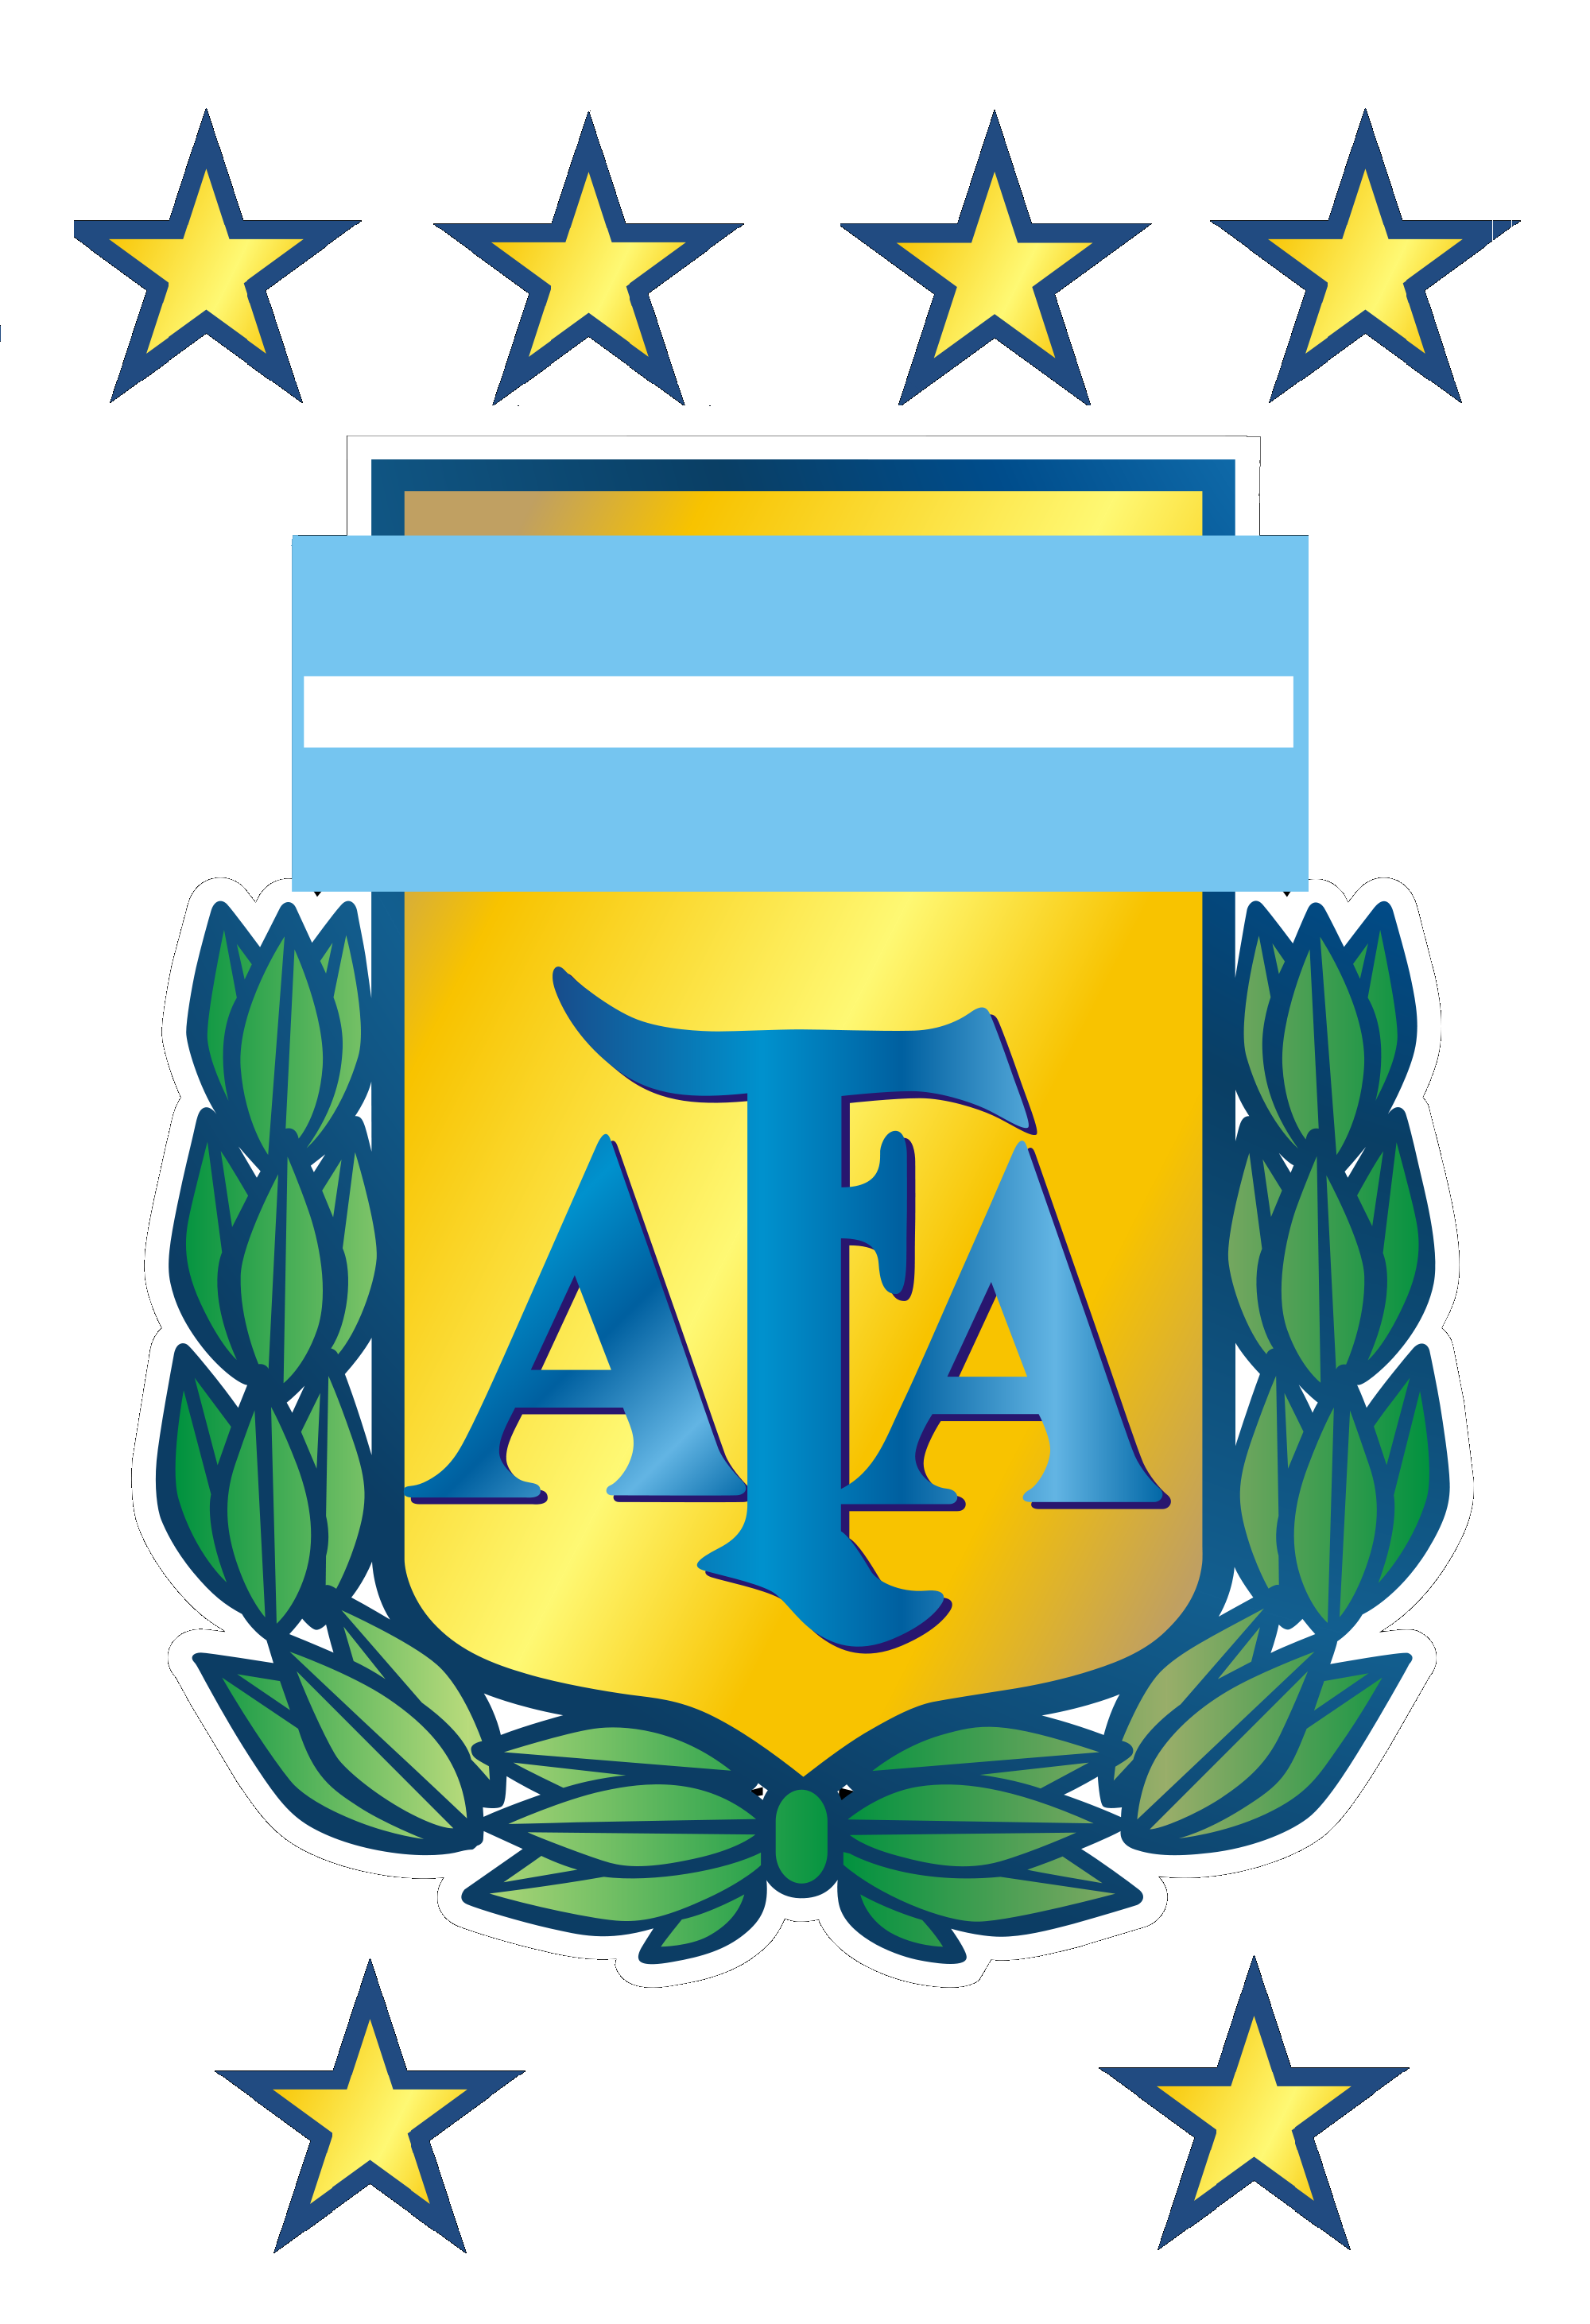 File:Siglas AFA text logo.png